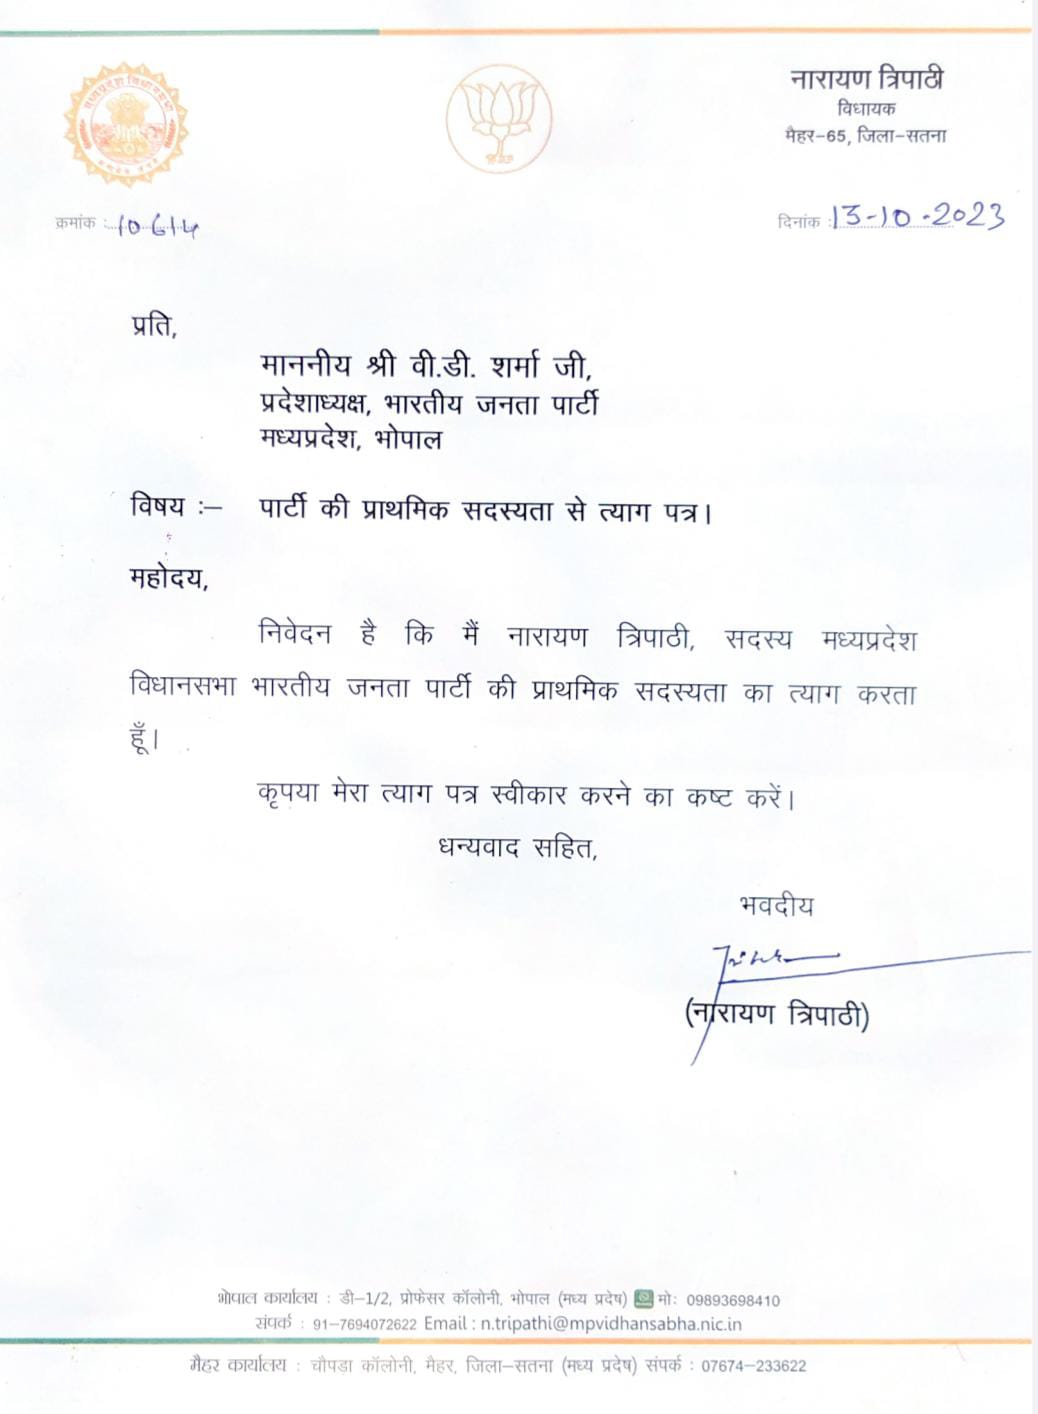 BJP MLA Narayan Tripathi resigns